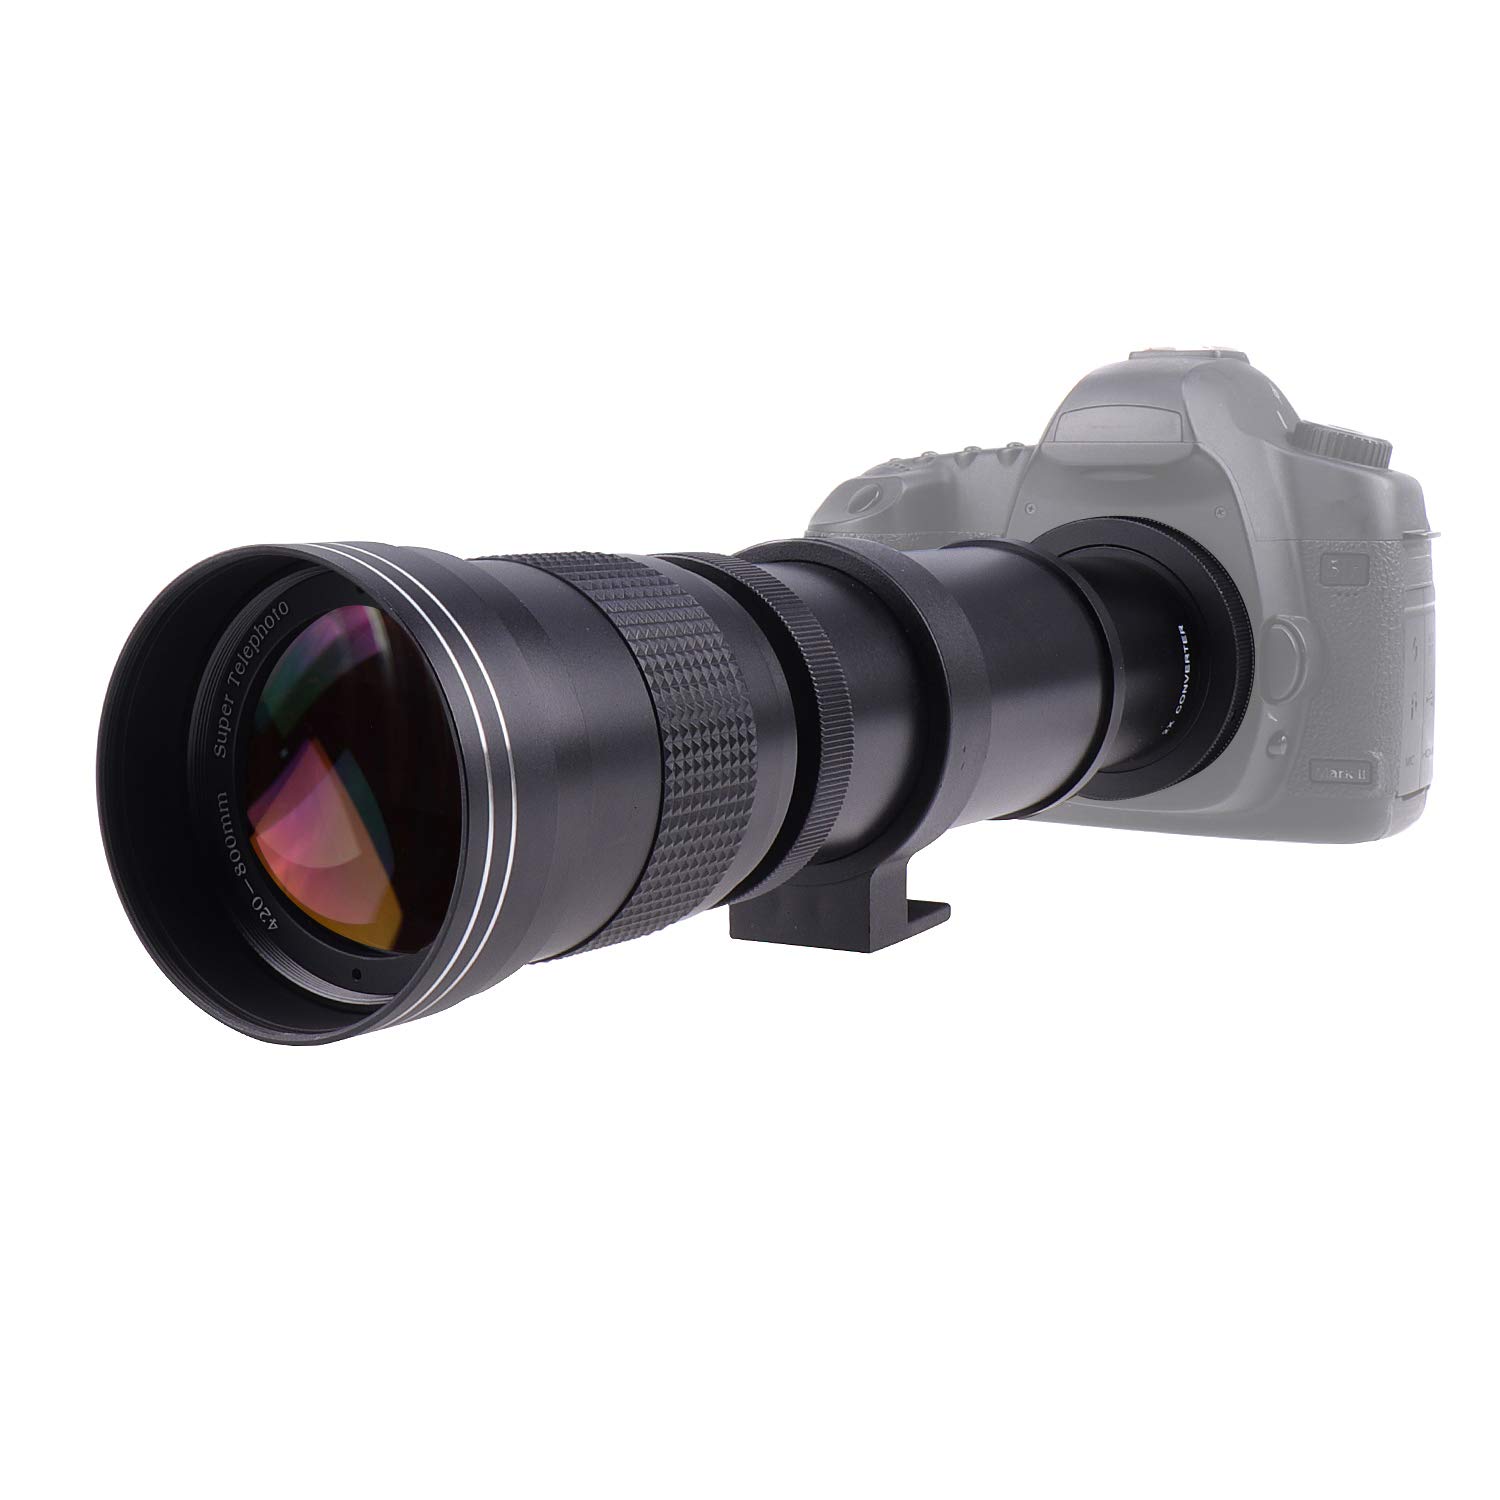 タムロン Foto4easy 420-800mm F8.3-16 Telephoto Zoom Lens with 2 X Teleconverter Lens and T to Nikon Adapter for Nikon D3